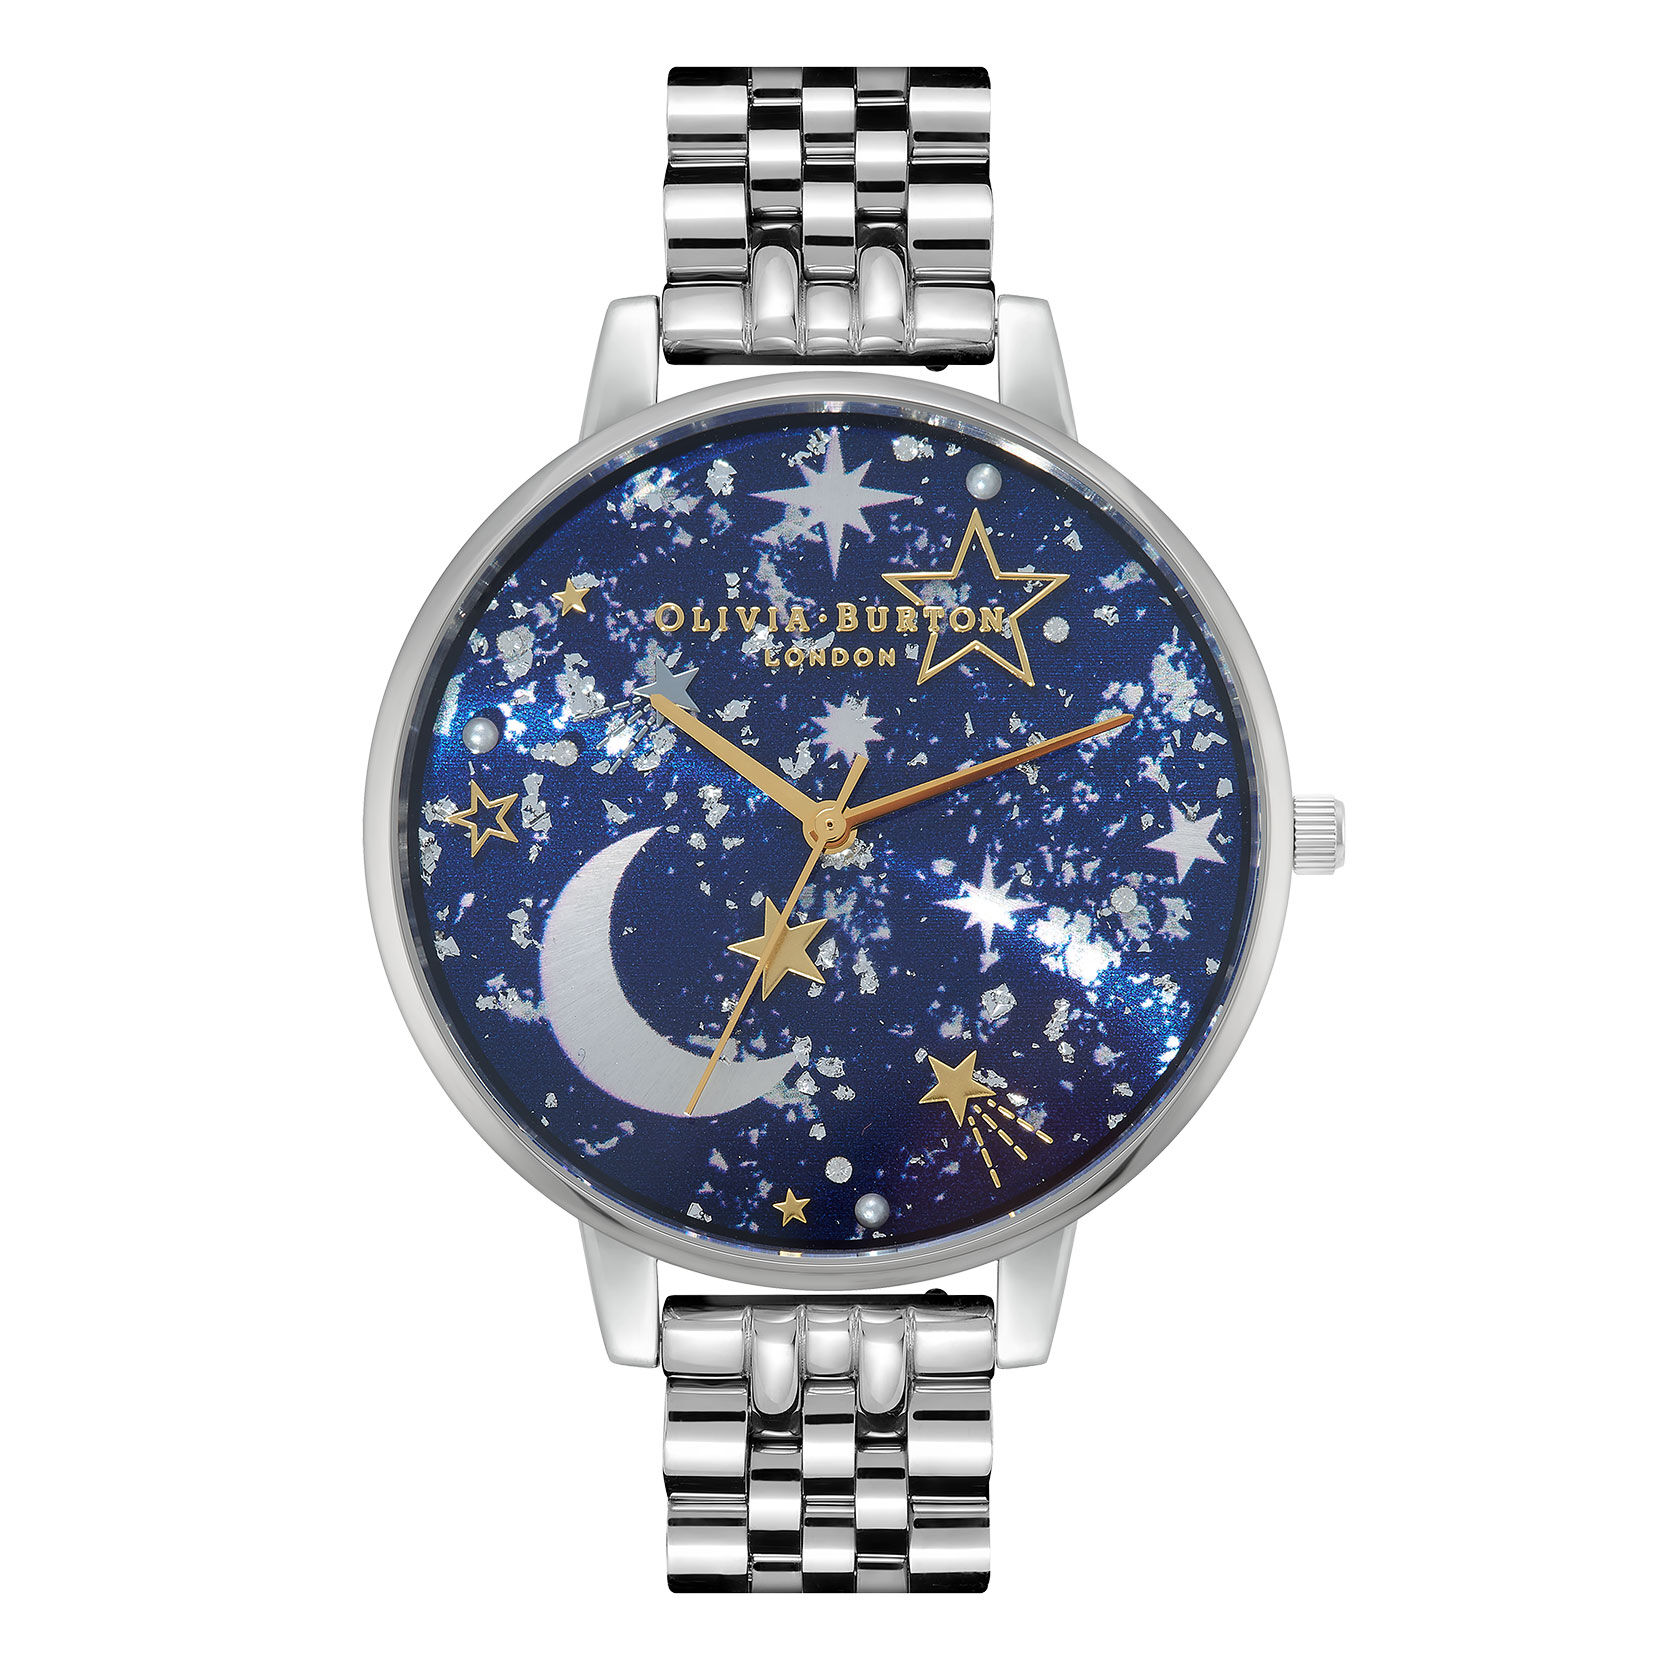 Celestial 38mm Blue & Silver Bracelet Watch